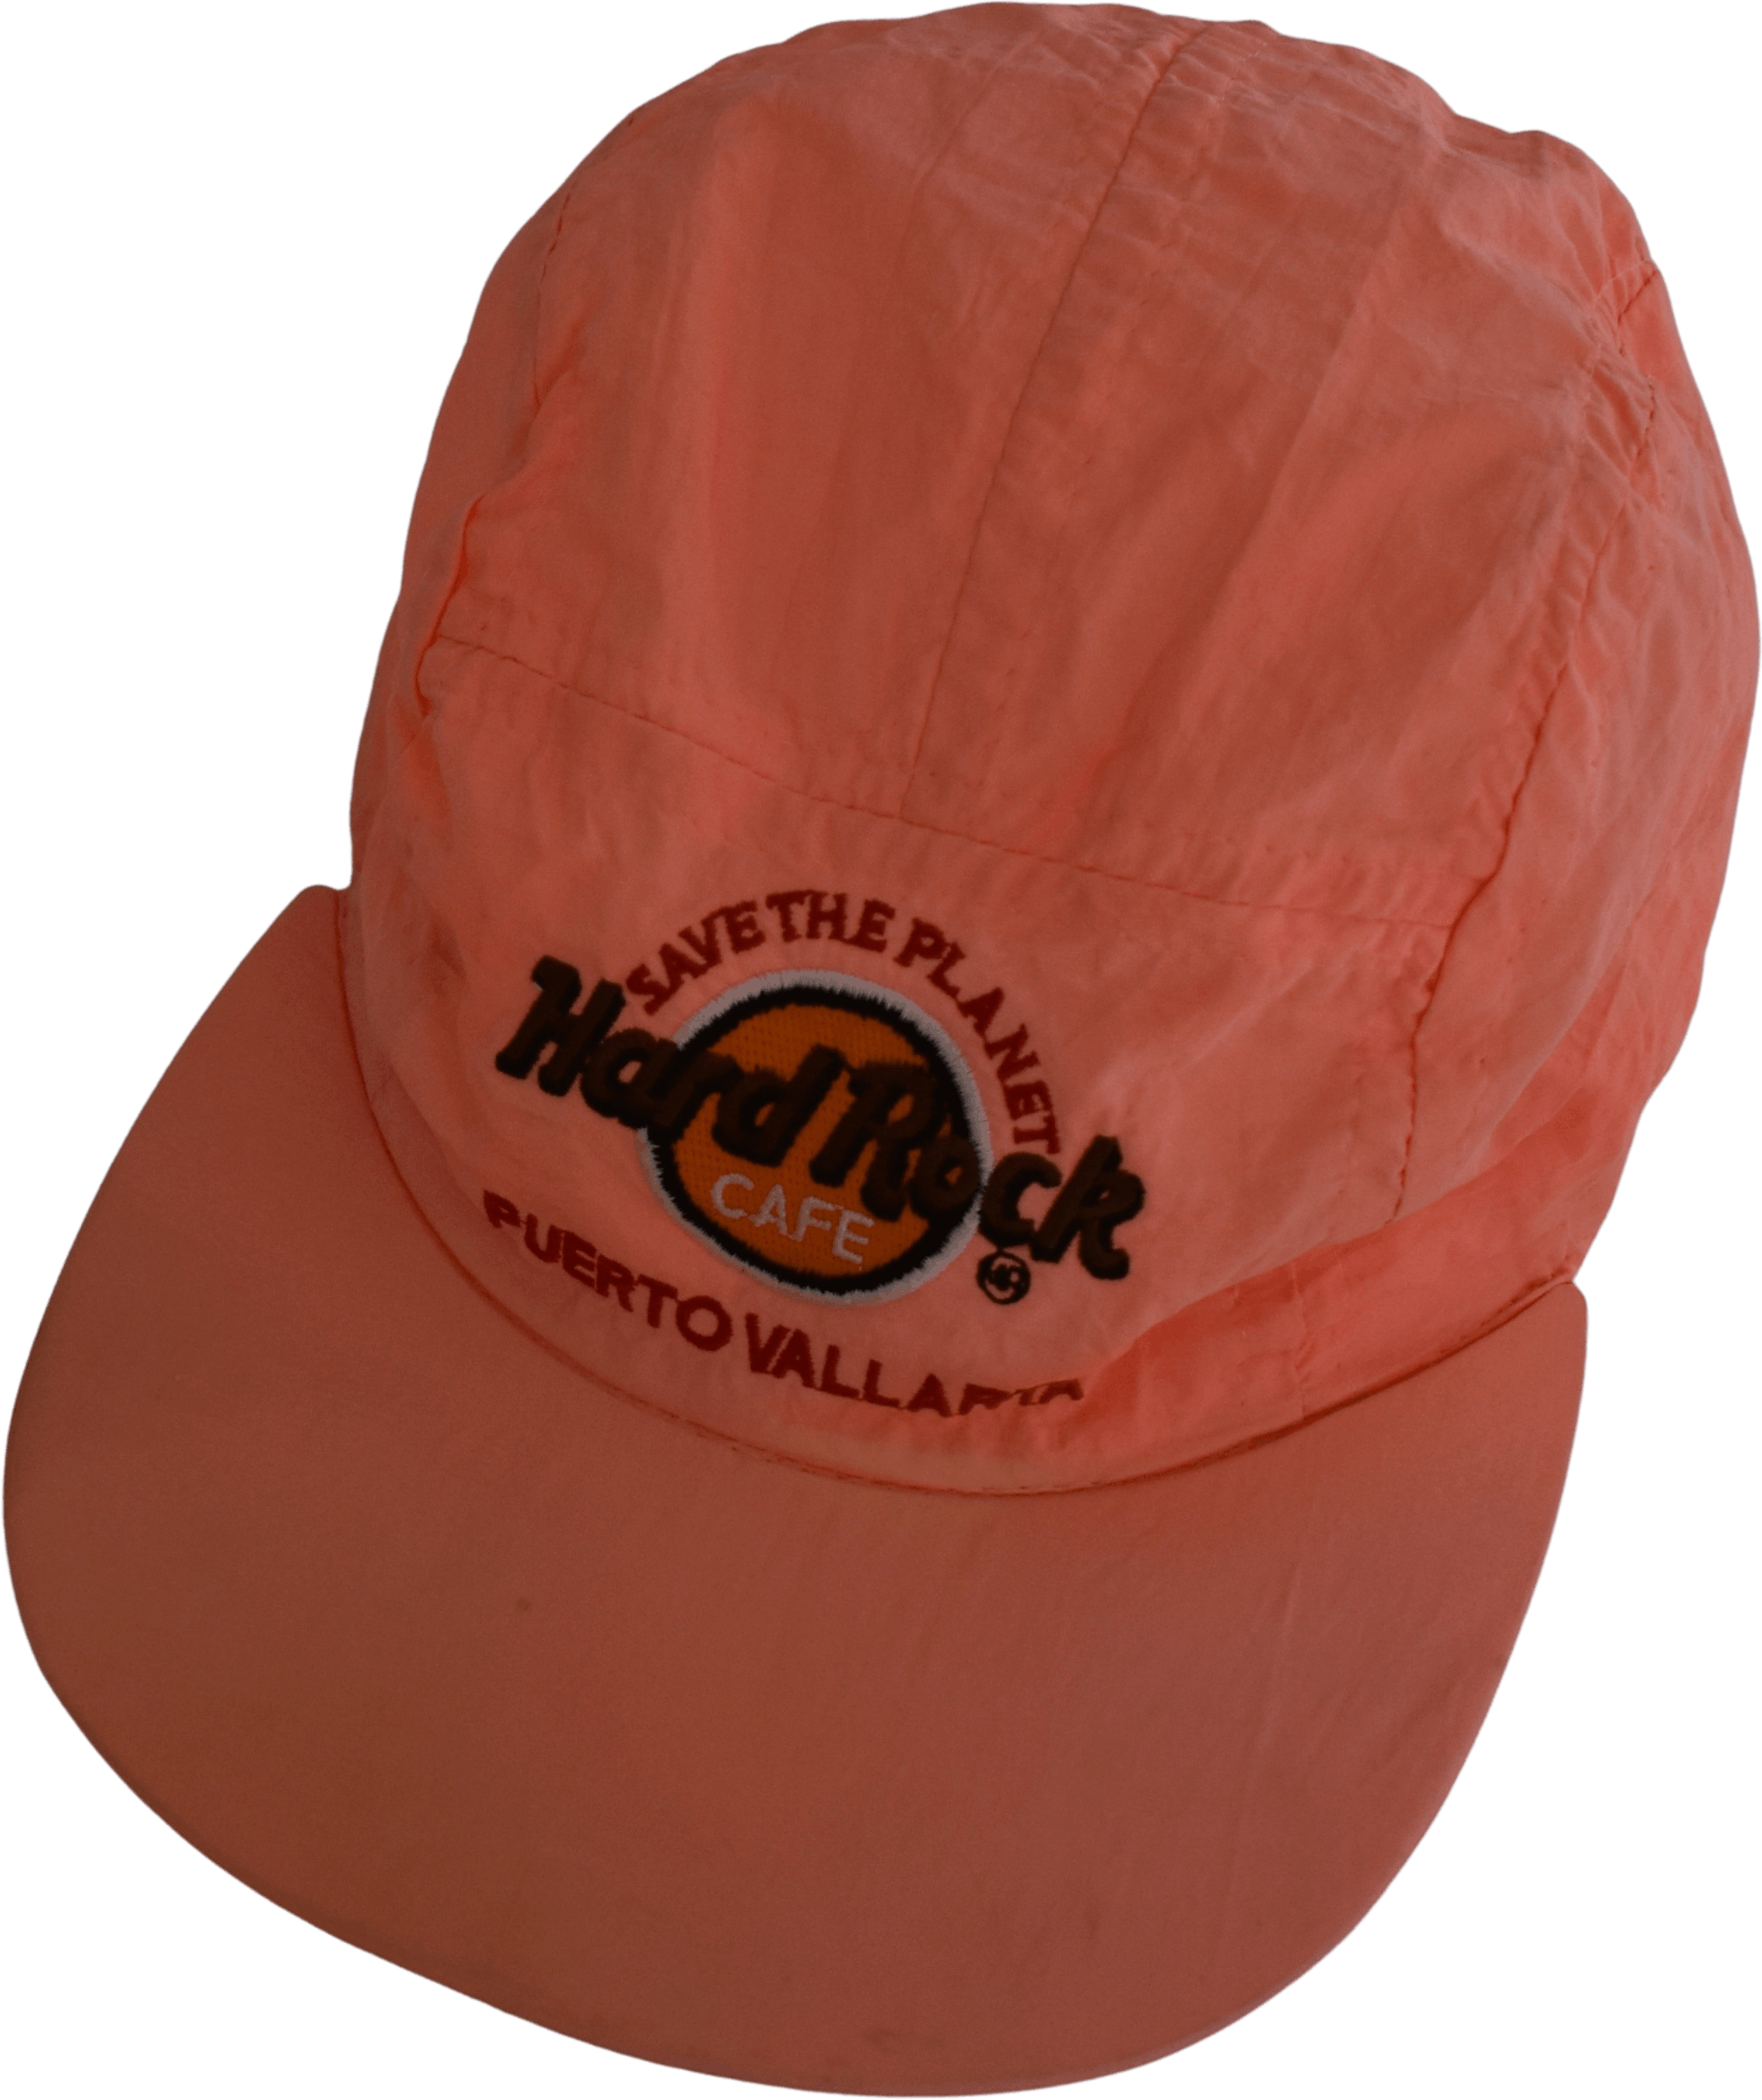 Vintage 80's Puerto Vallarta Hard Rock Café Hat by Cachuchas Publicitarias